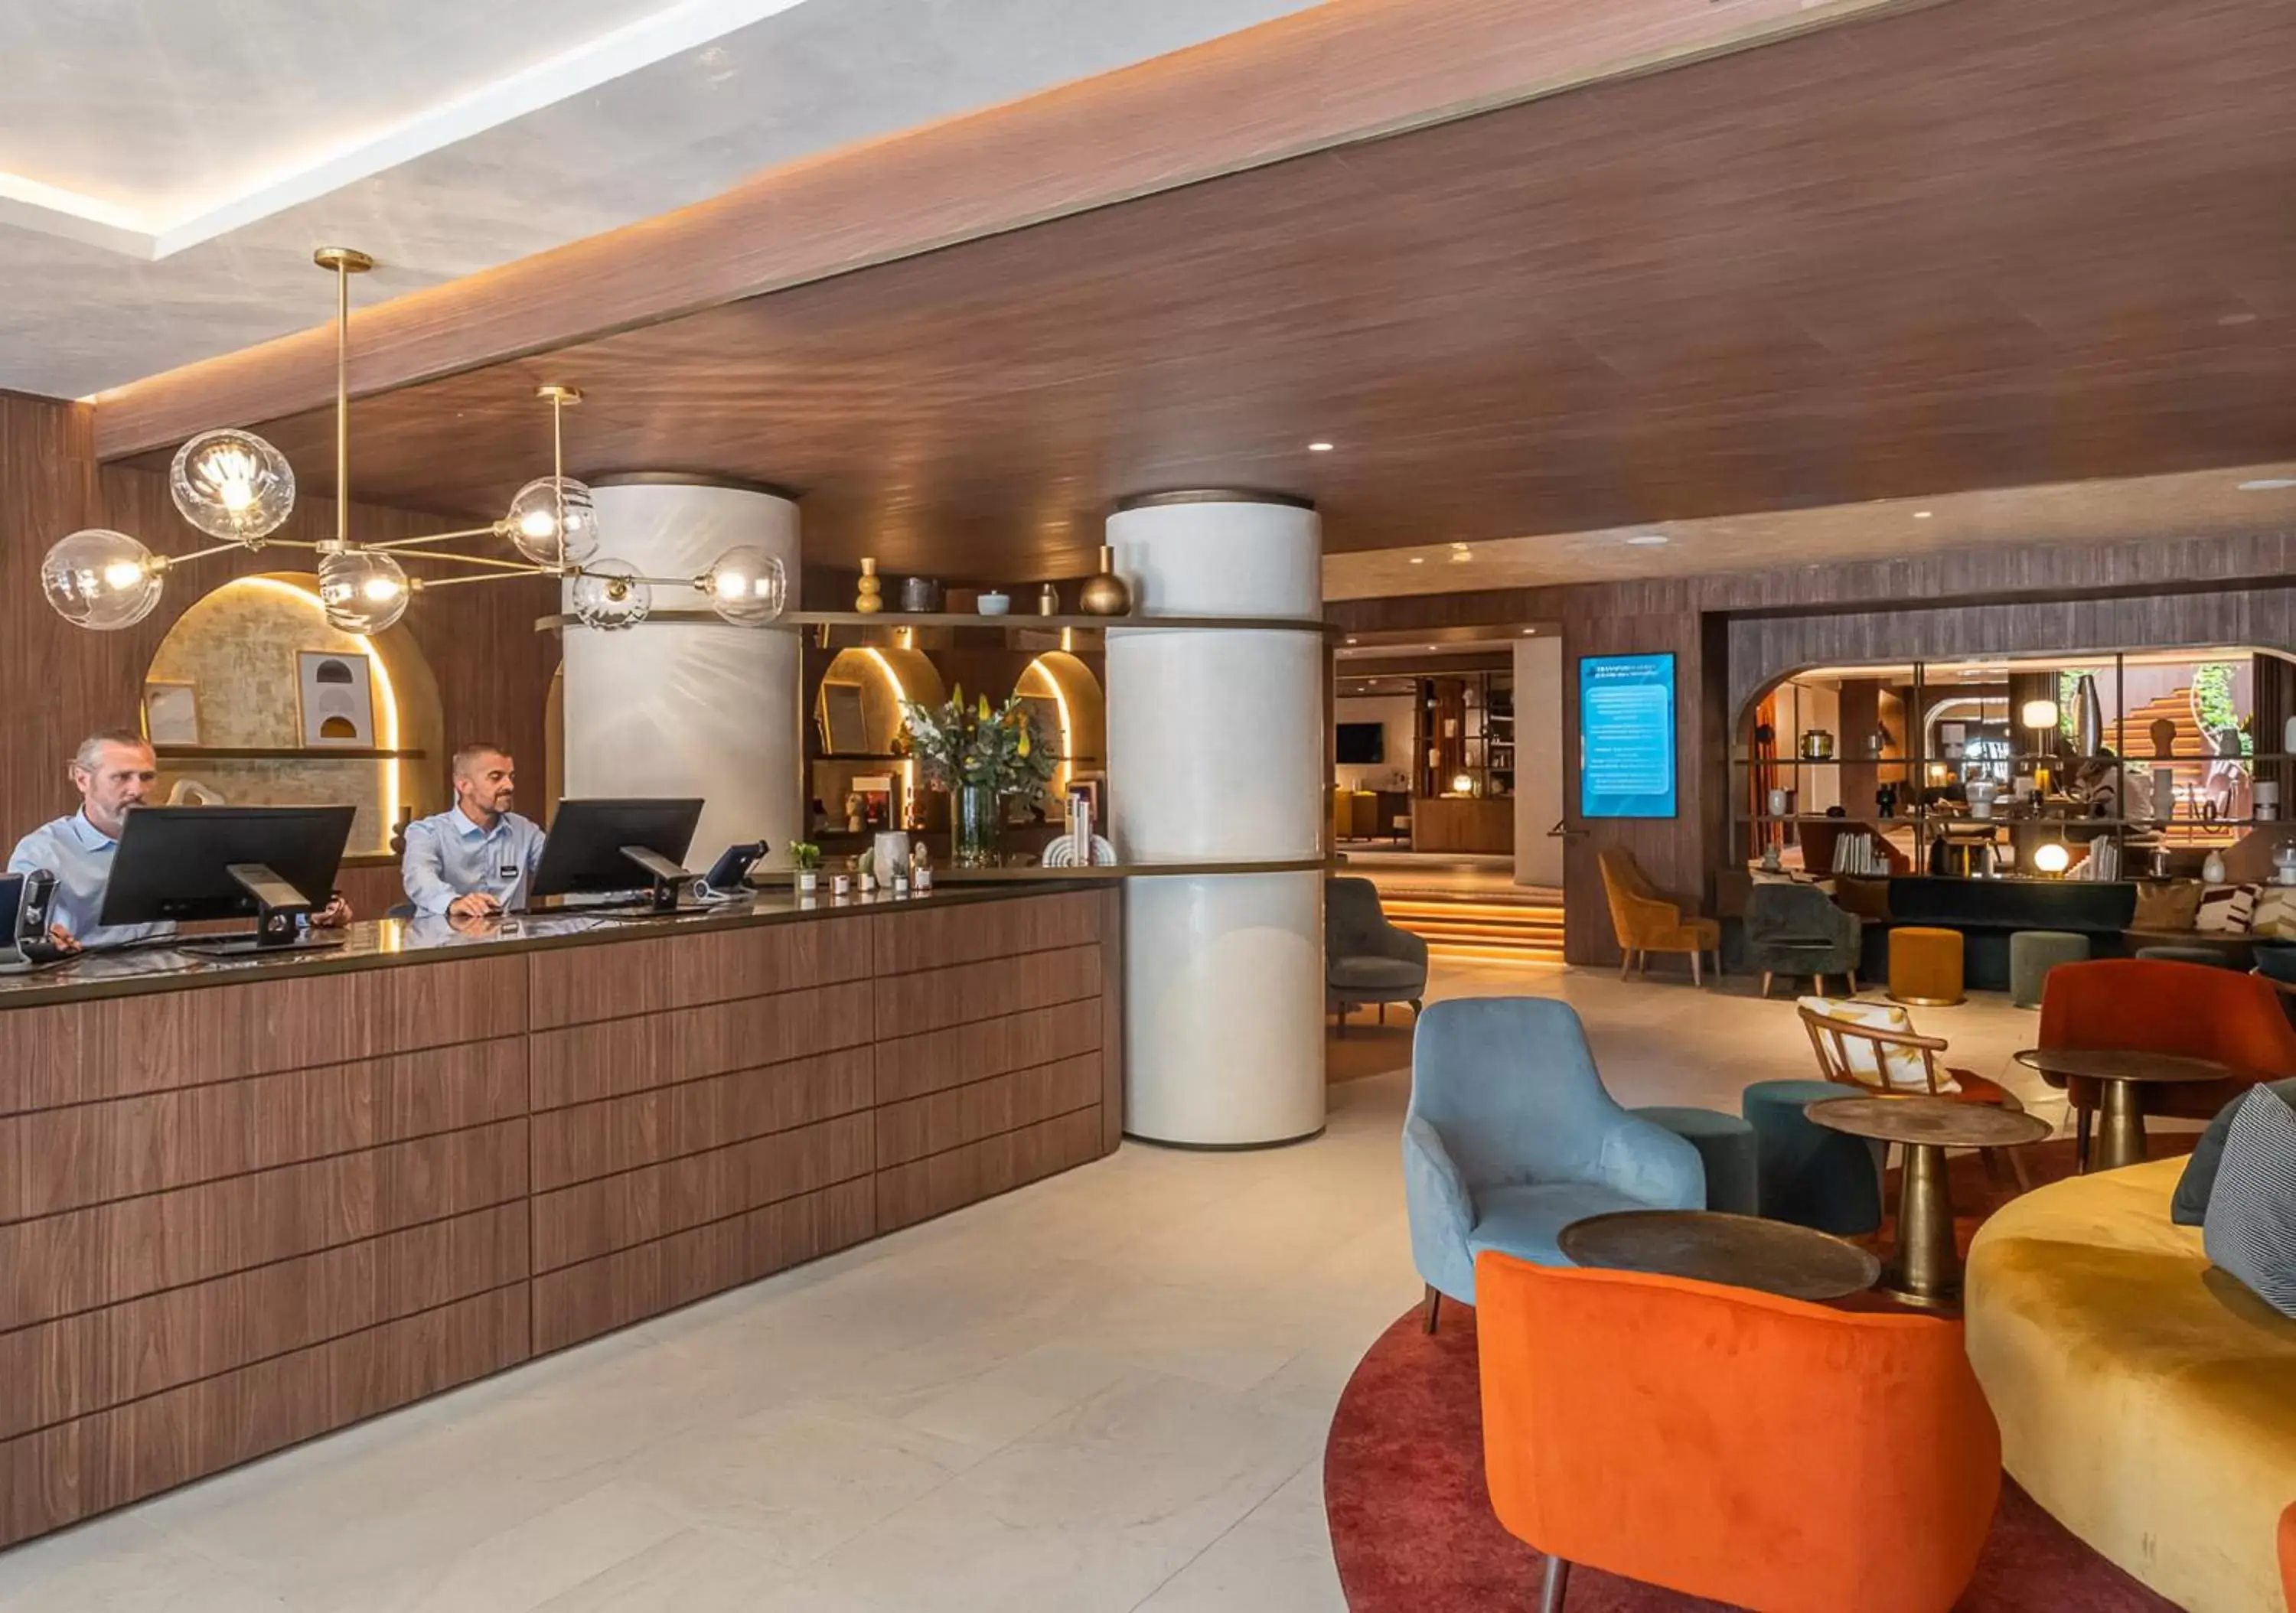 Lobby or reception in Hôtel Burdigala by Inwood Hotels